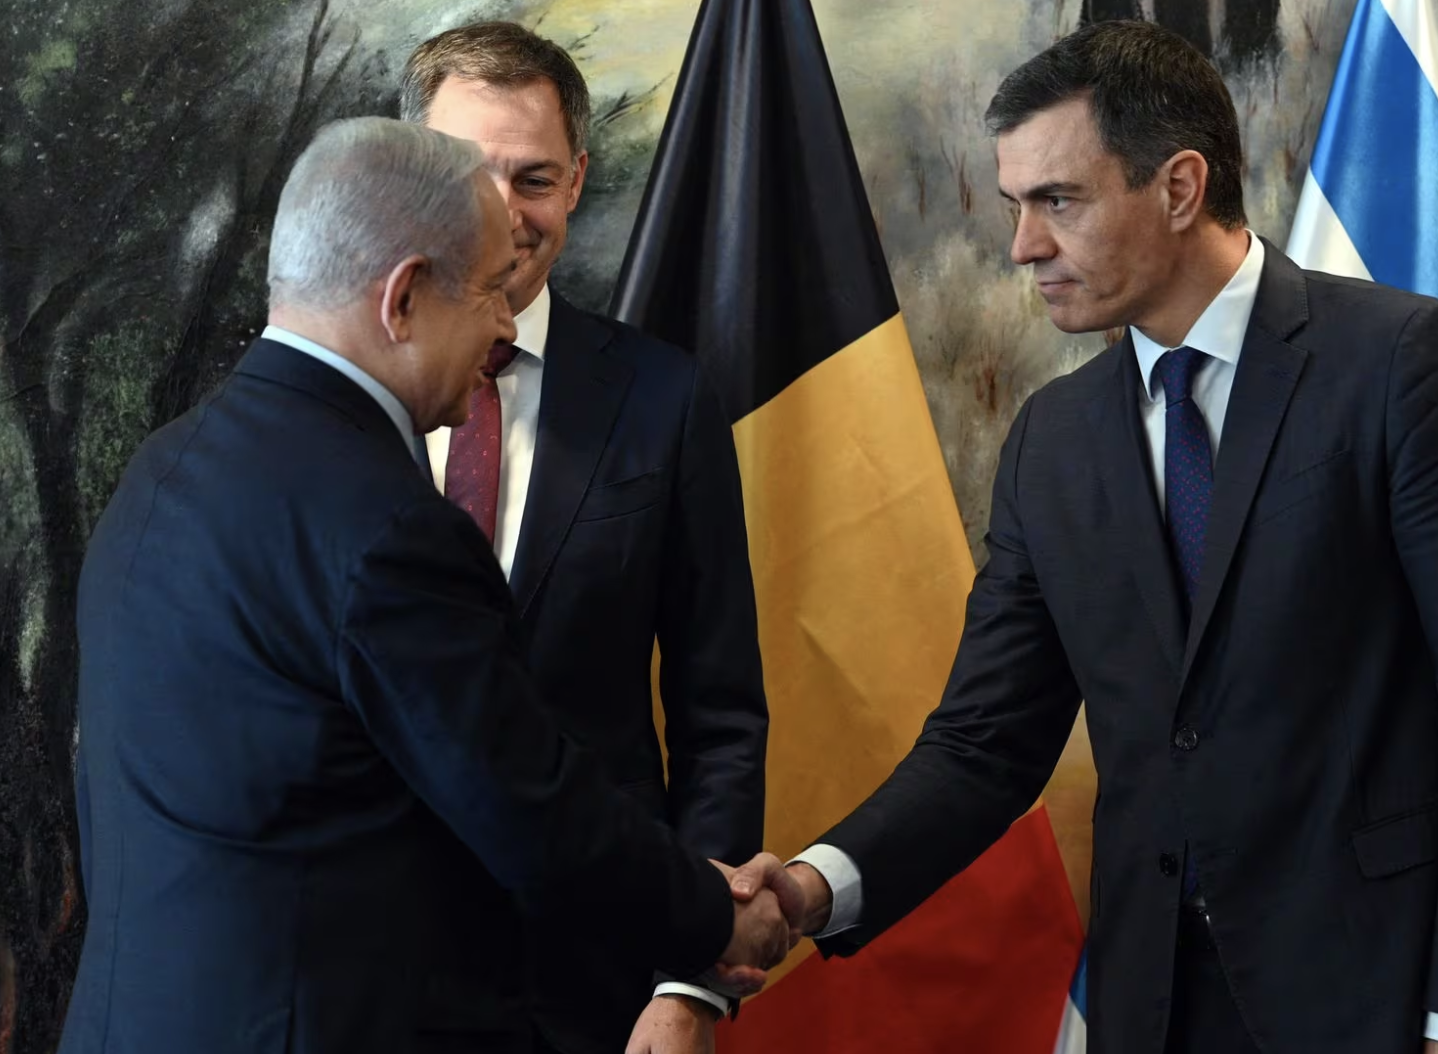 Thủ tướng Israel Benjamin Netanyahu (trái) bắt tay Thủ tướng Tây Ban Nha Pedro Sánchez (phải) bên cạnh Thủ tướng Bỉ Alexander De Croo trong cuộc gặp mới đây ở Jerusalem